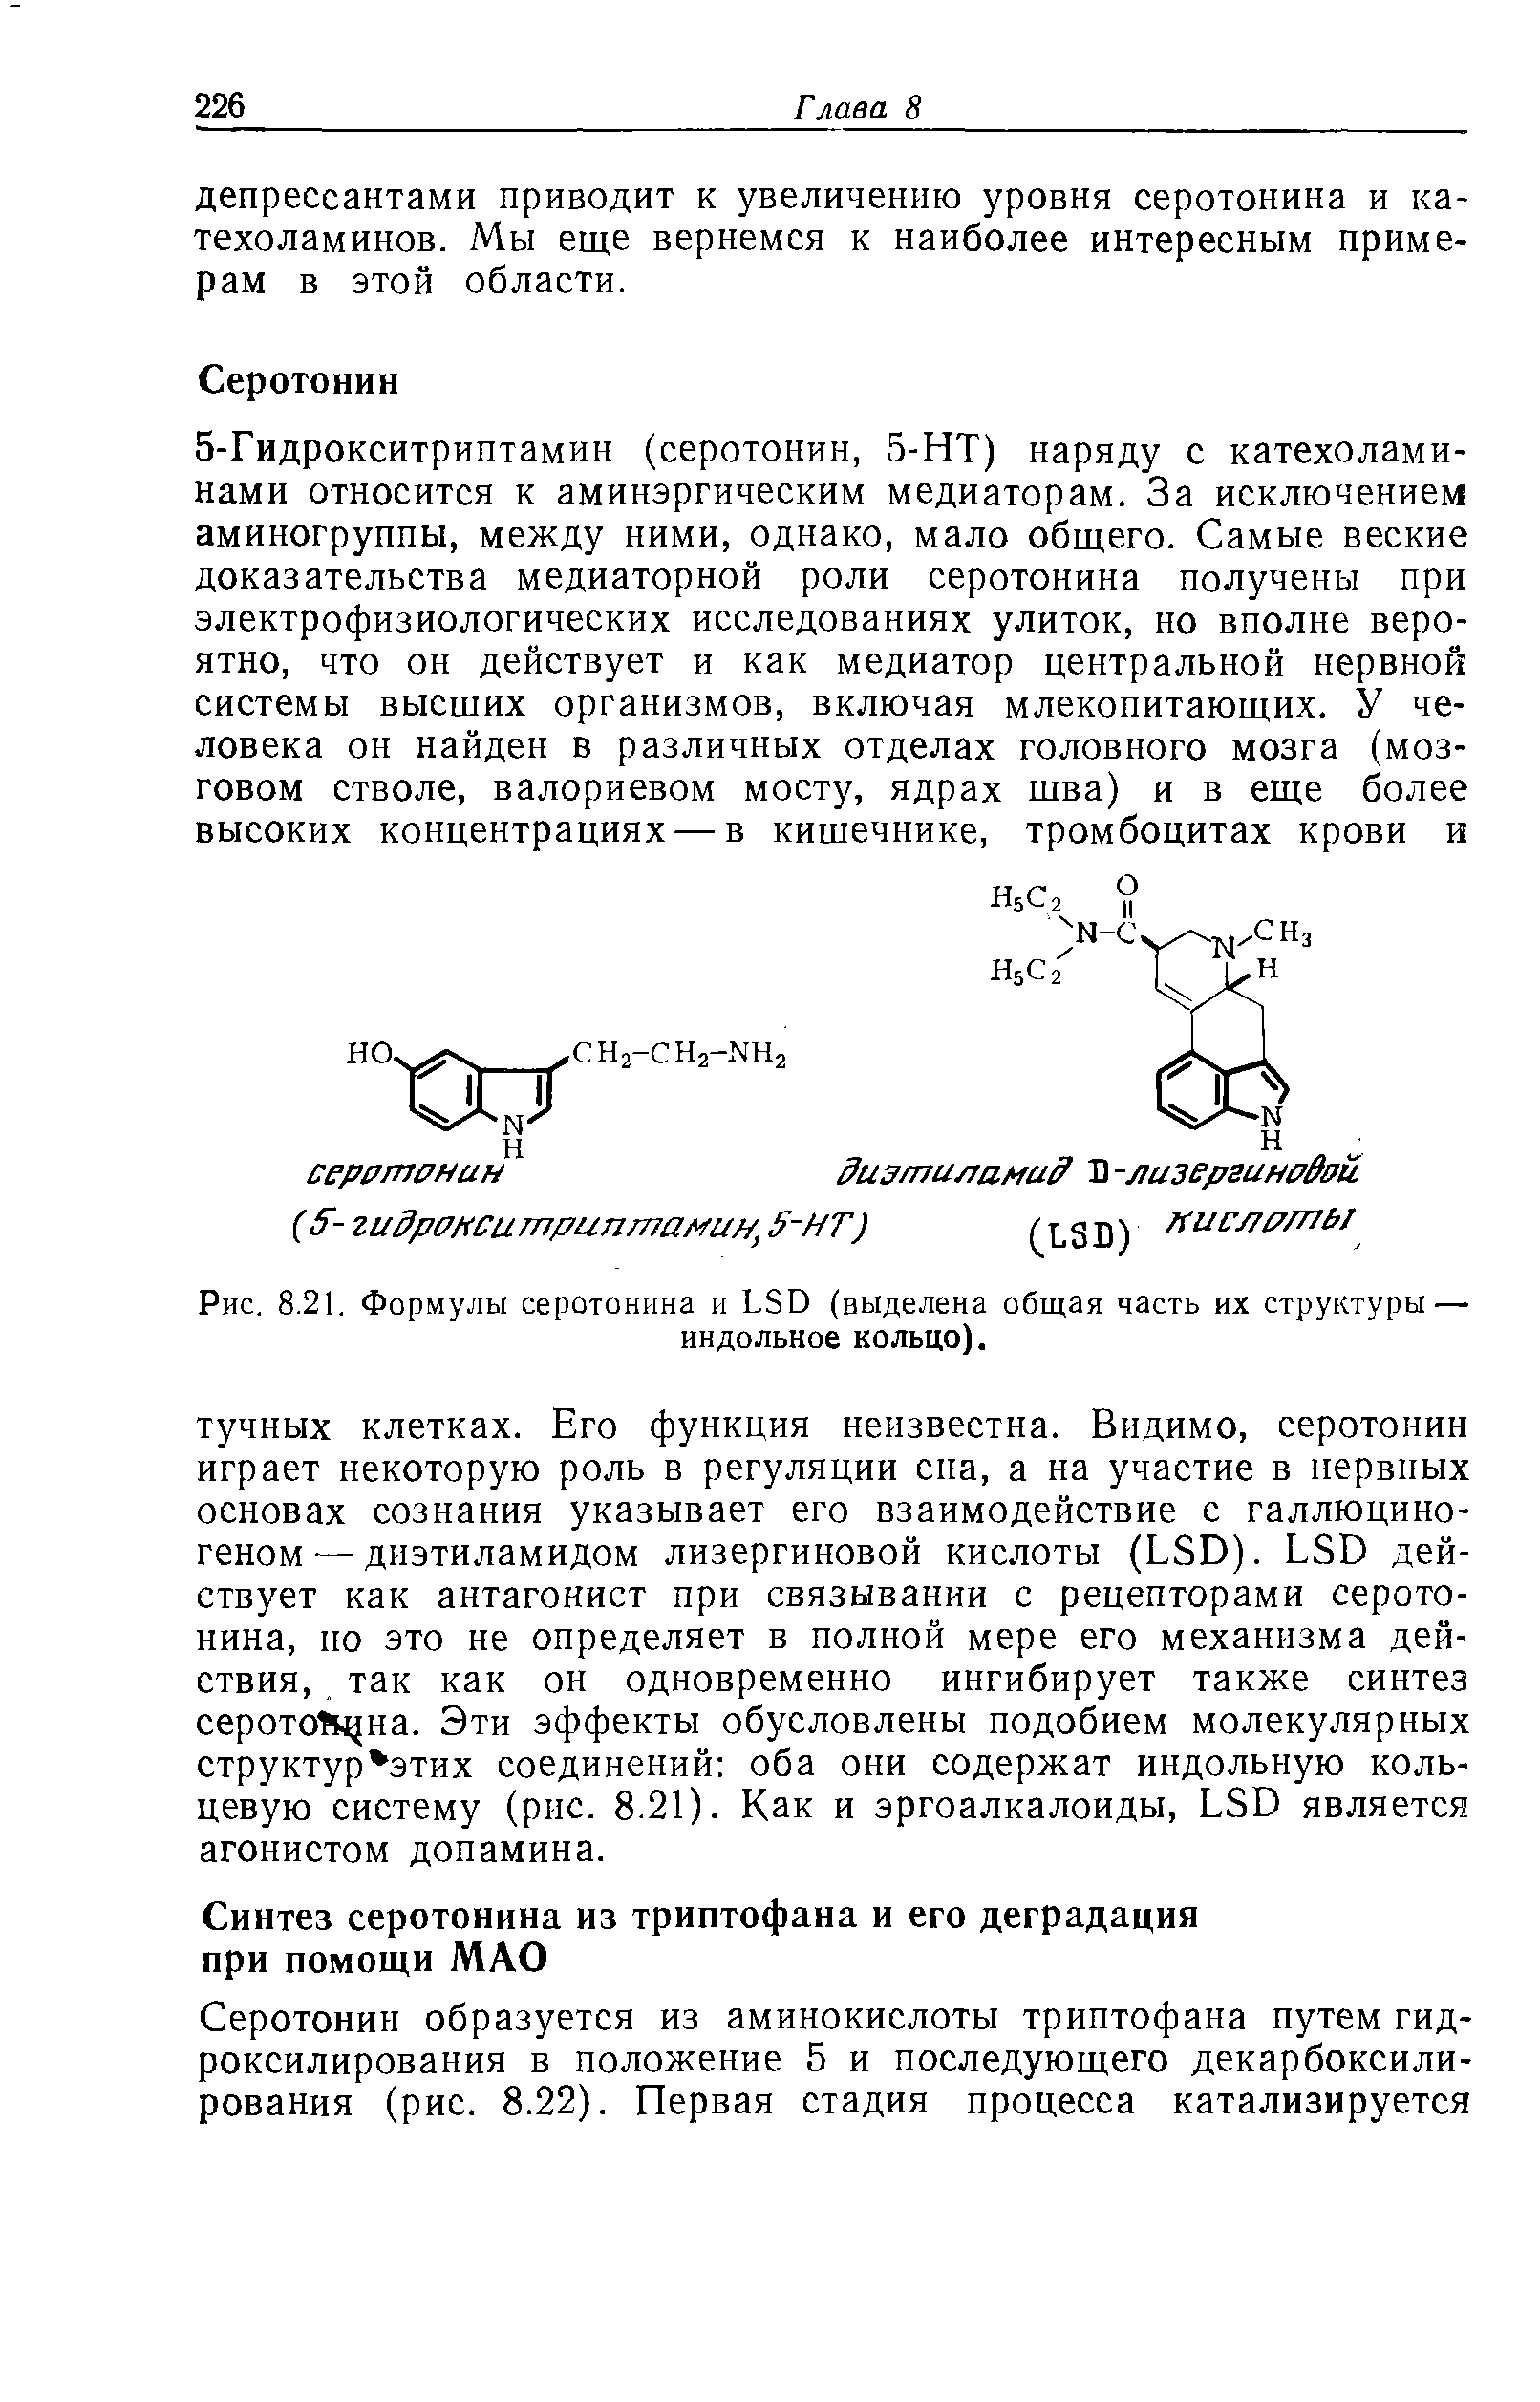 Рис. 8.21. Формулы серотонина и LSD (выделена общая часть их структуры — индольное кольцо).